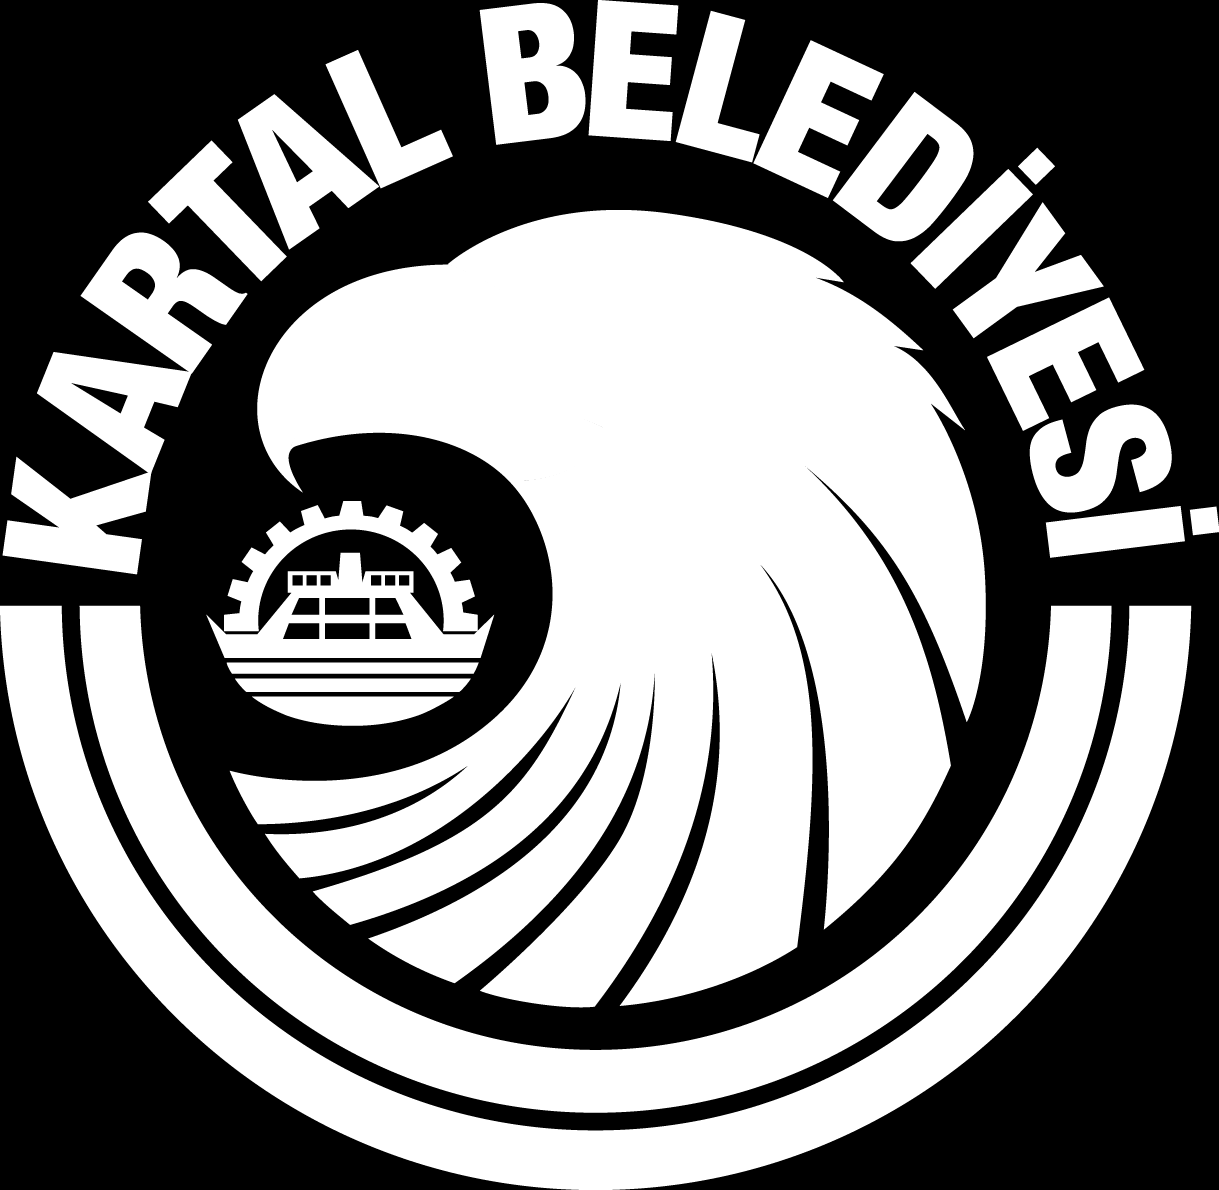 1) YARIŞIN YERİ VE SEKRETERLİK Marina Dragos Yelken İhtisas Kulübü, Kartal, İstanbul 2) YARIŞIN TARİHİ 28-29-30 Ekim 2016 3) KATILAN TAKIMLAR 16 takımlı yarış planlanmıştır.